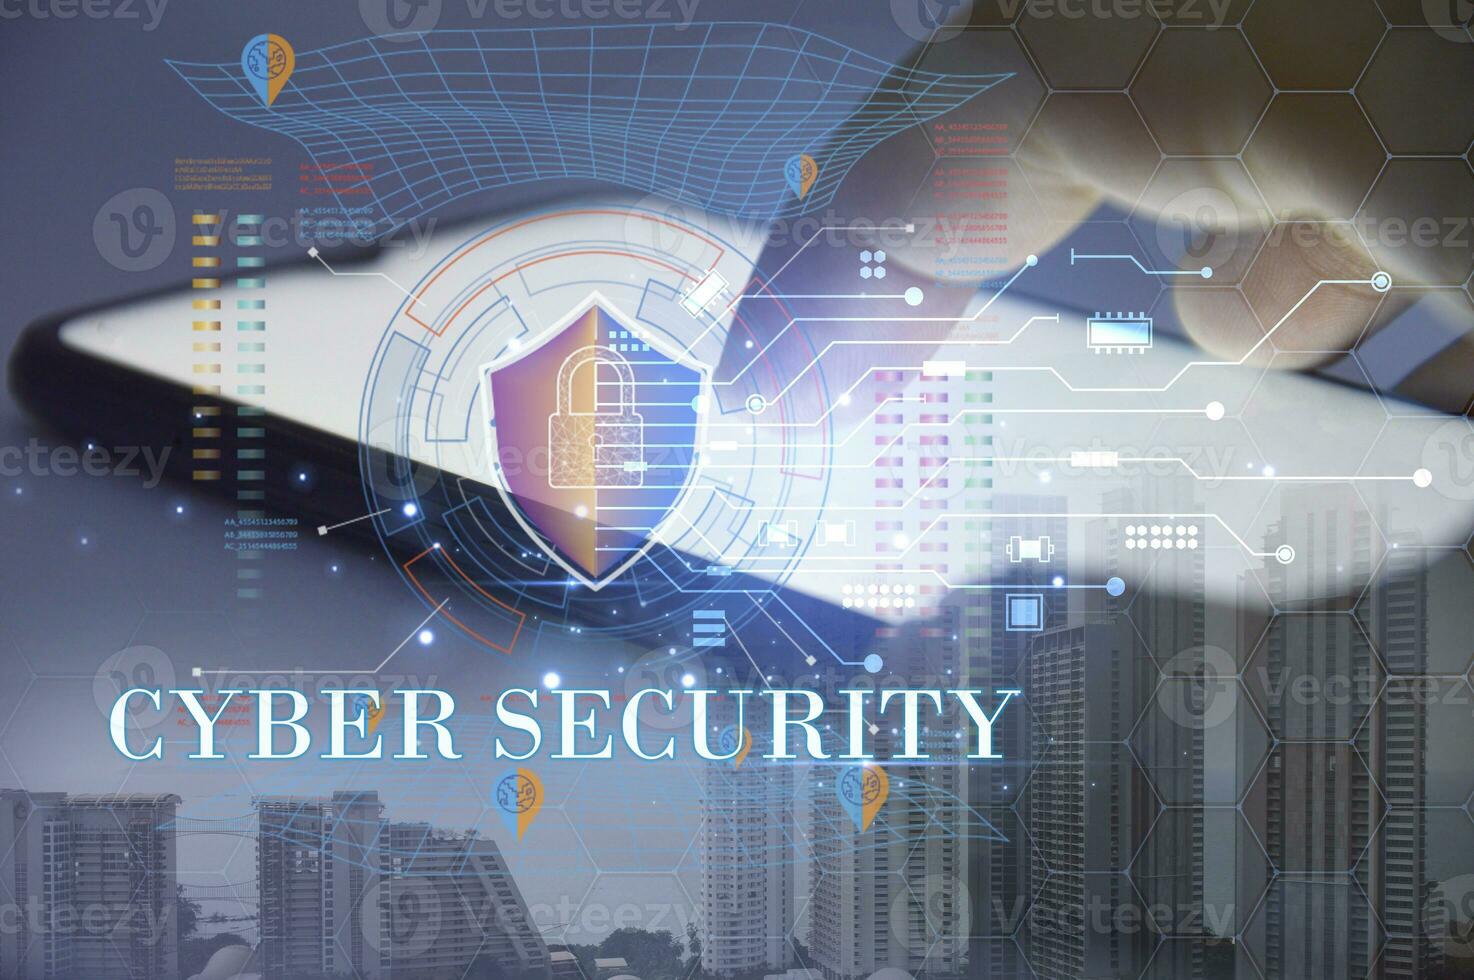 cybersäkerhetskoncept, användarintegritetssäkerhet och kryptering, säker internetåtkomst framtidsteknologi och cybernetik, skärmhänglås. foto